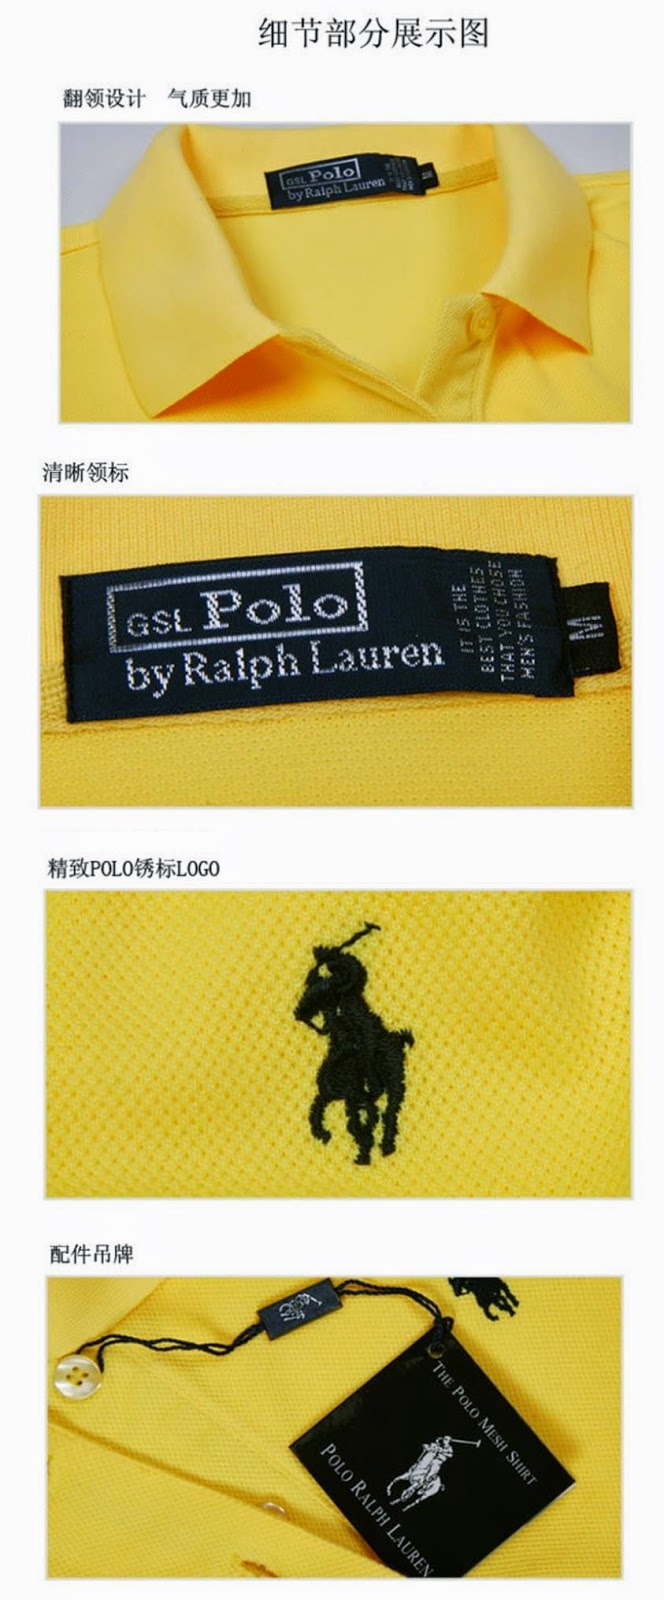 Venta de Productos Baratos: Polos de Ralph Lauren a 15€.